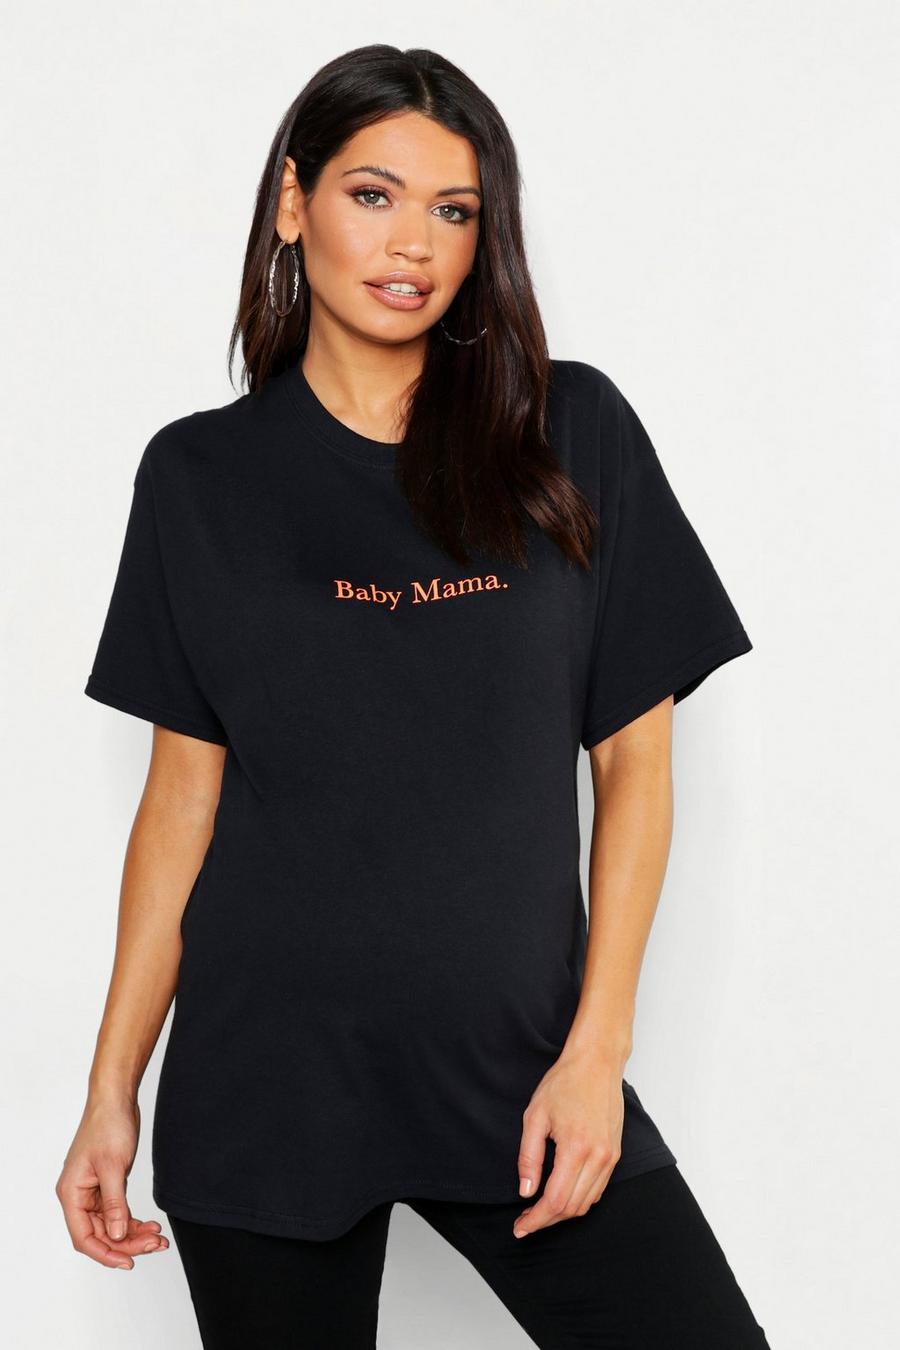 Camiseta extragrande con eslogan "Baby Mama" Neón Premamá image number 1